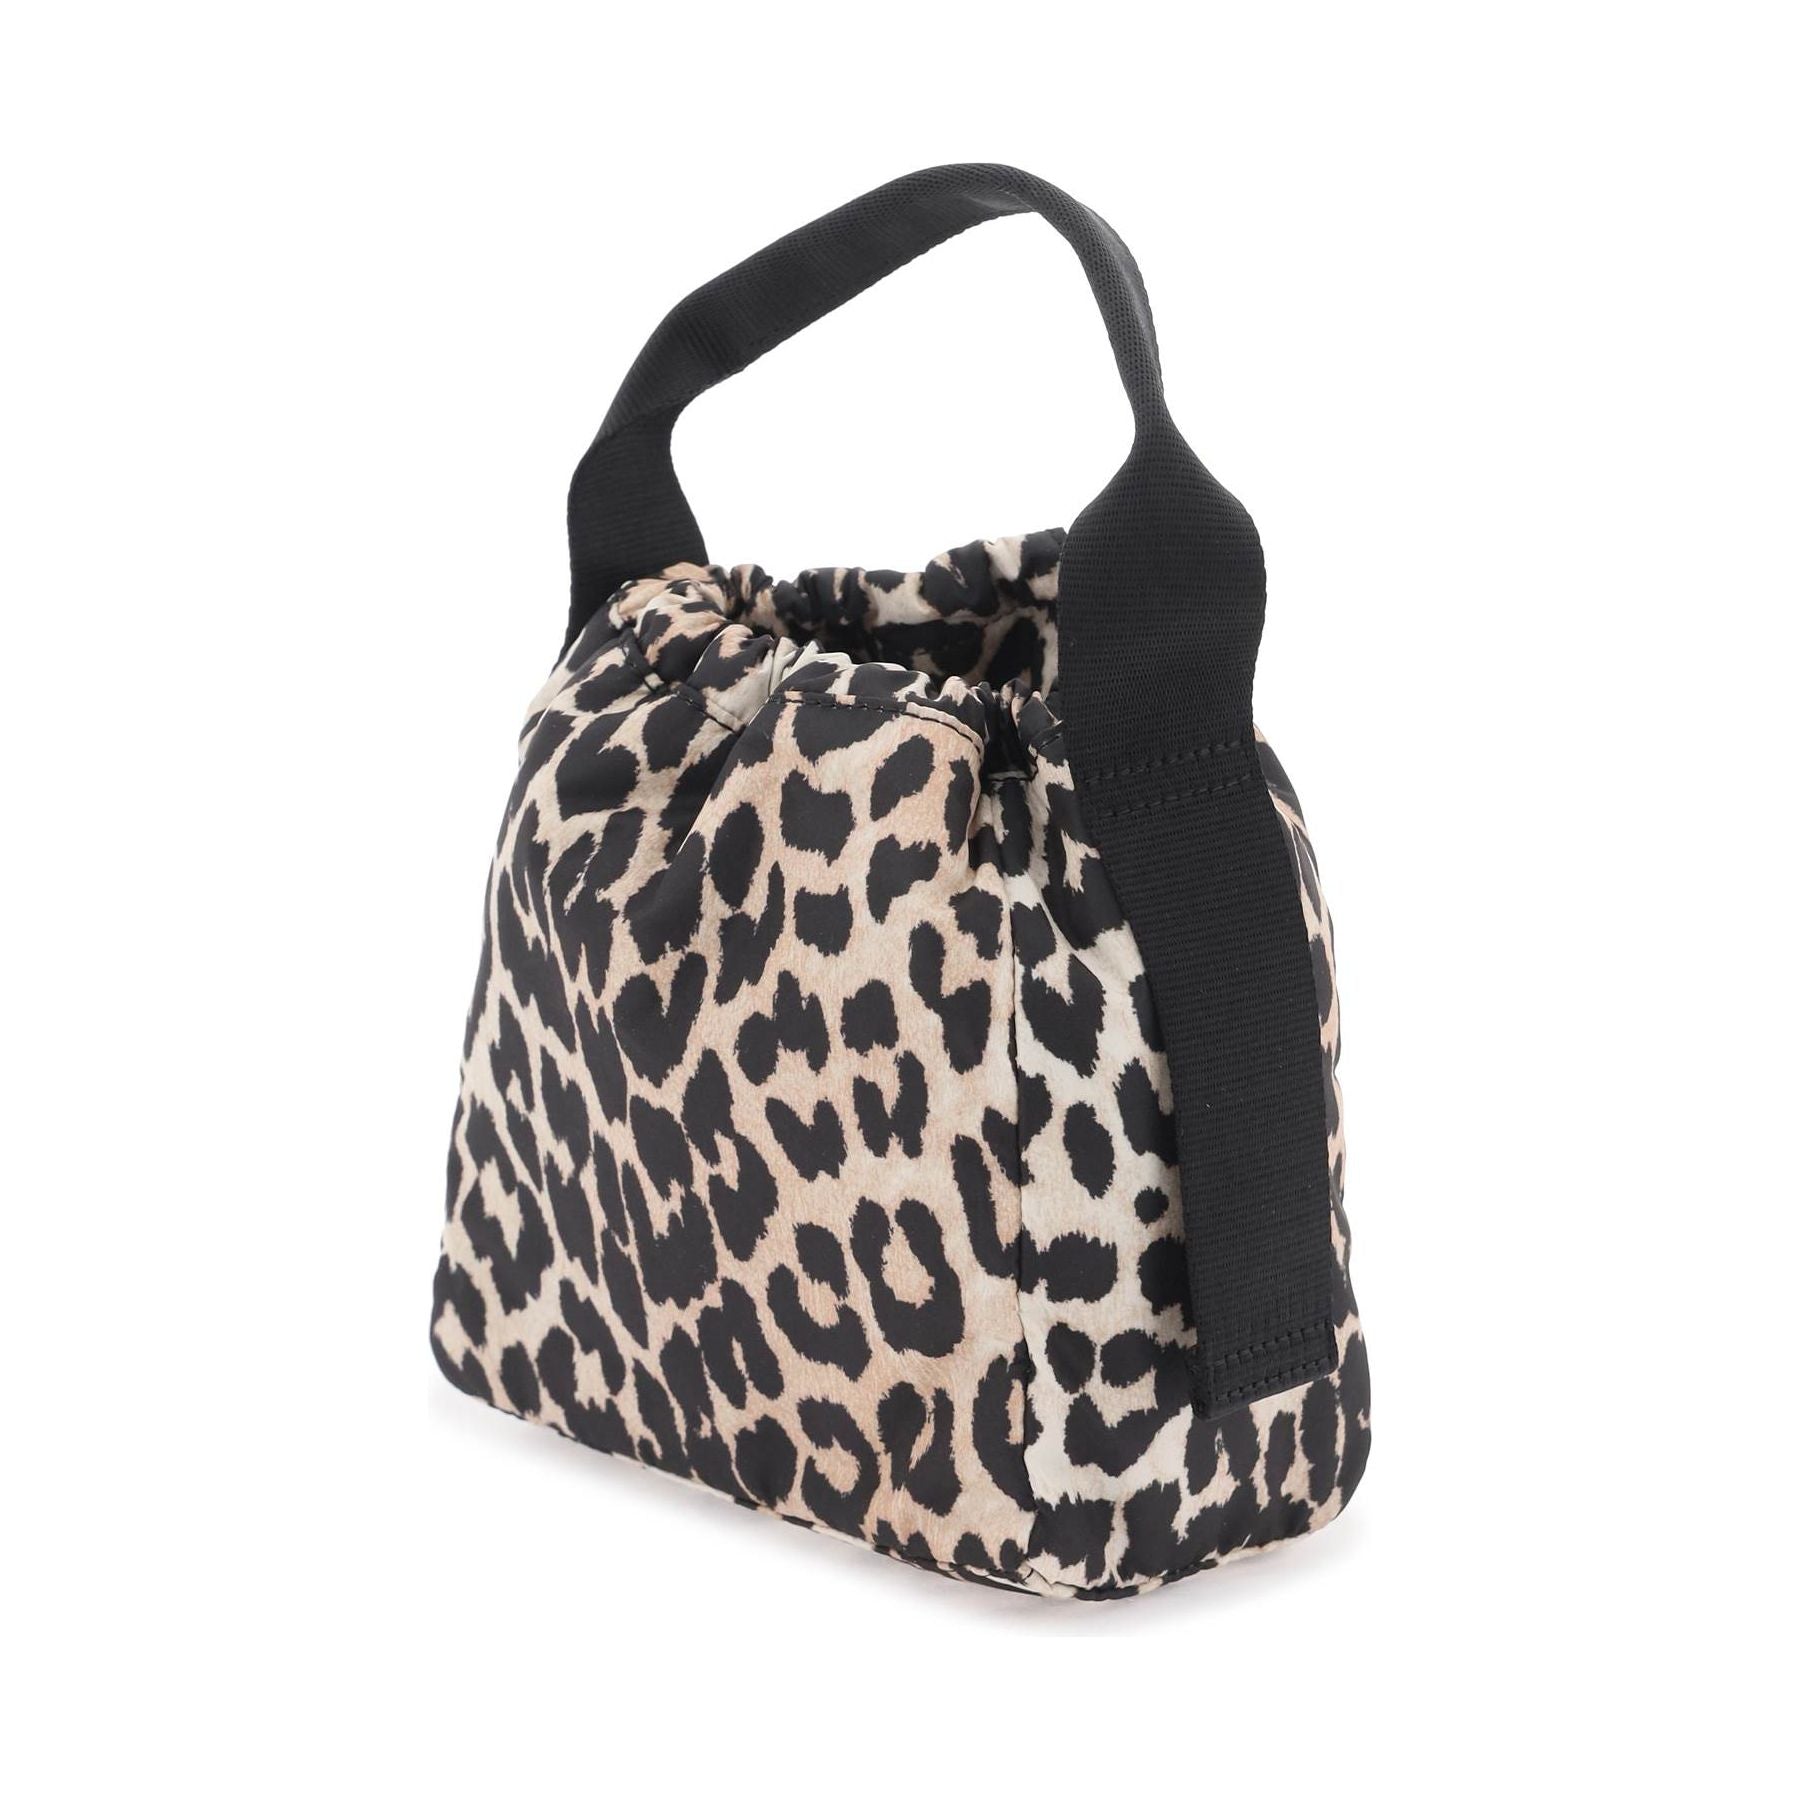 Leopard Print Tech Pouch Handbag